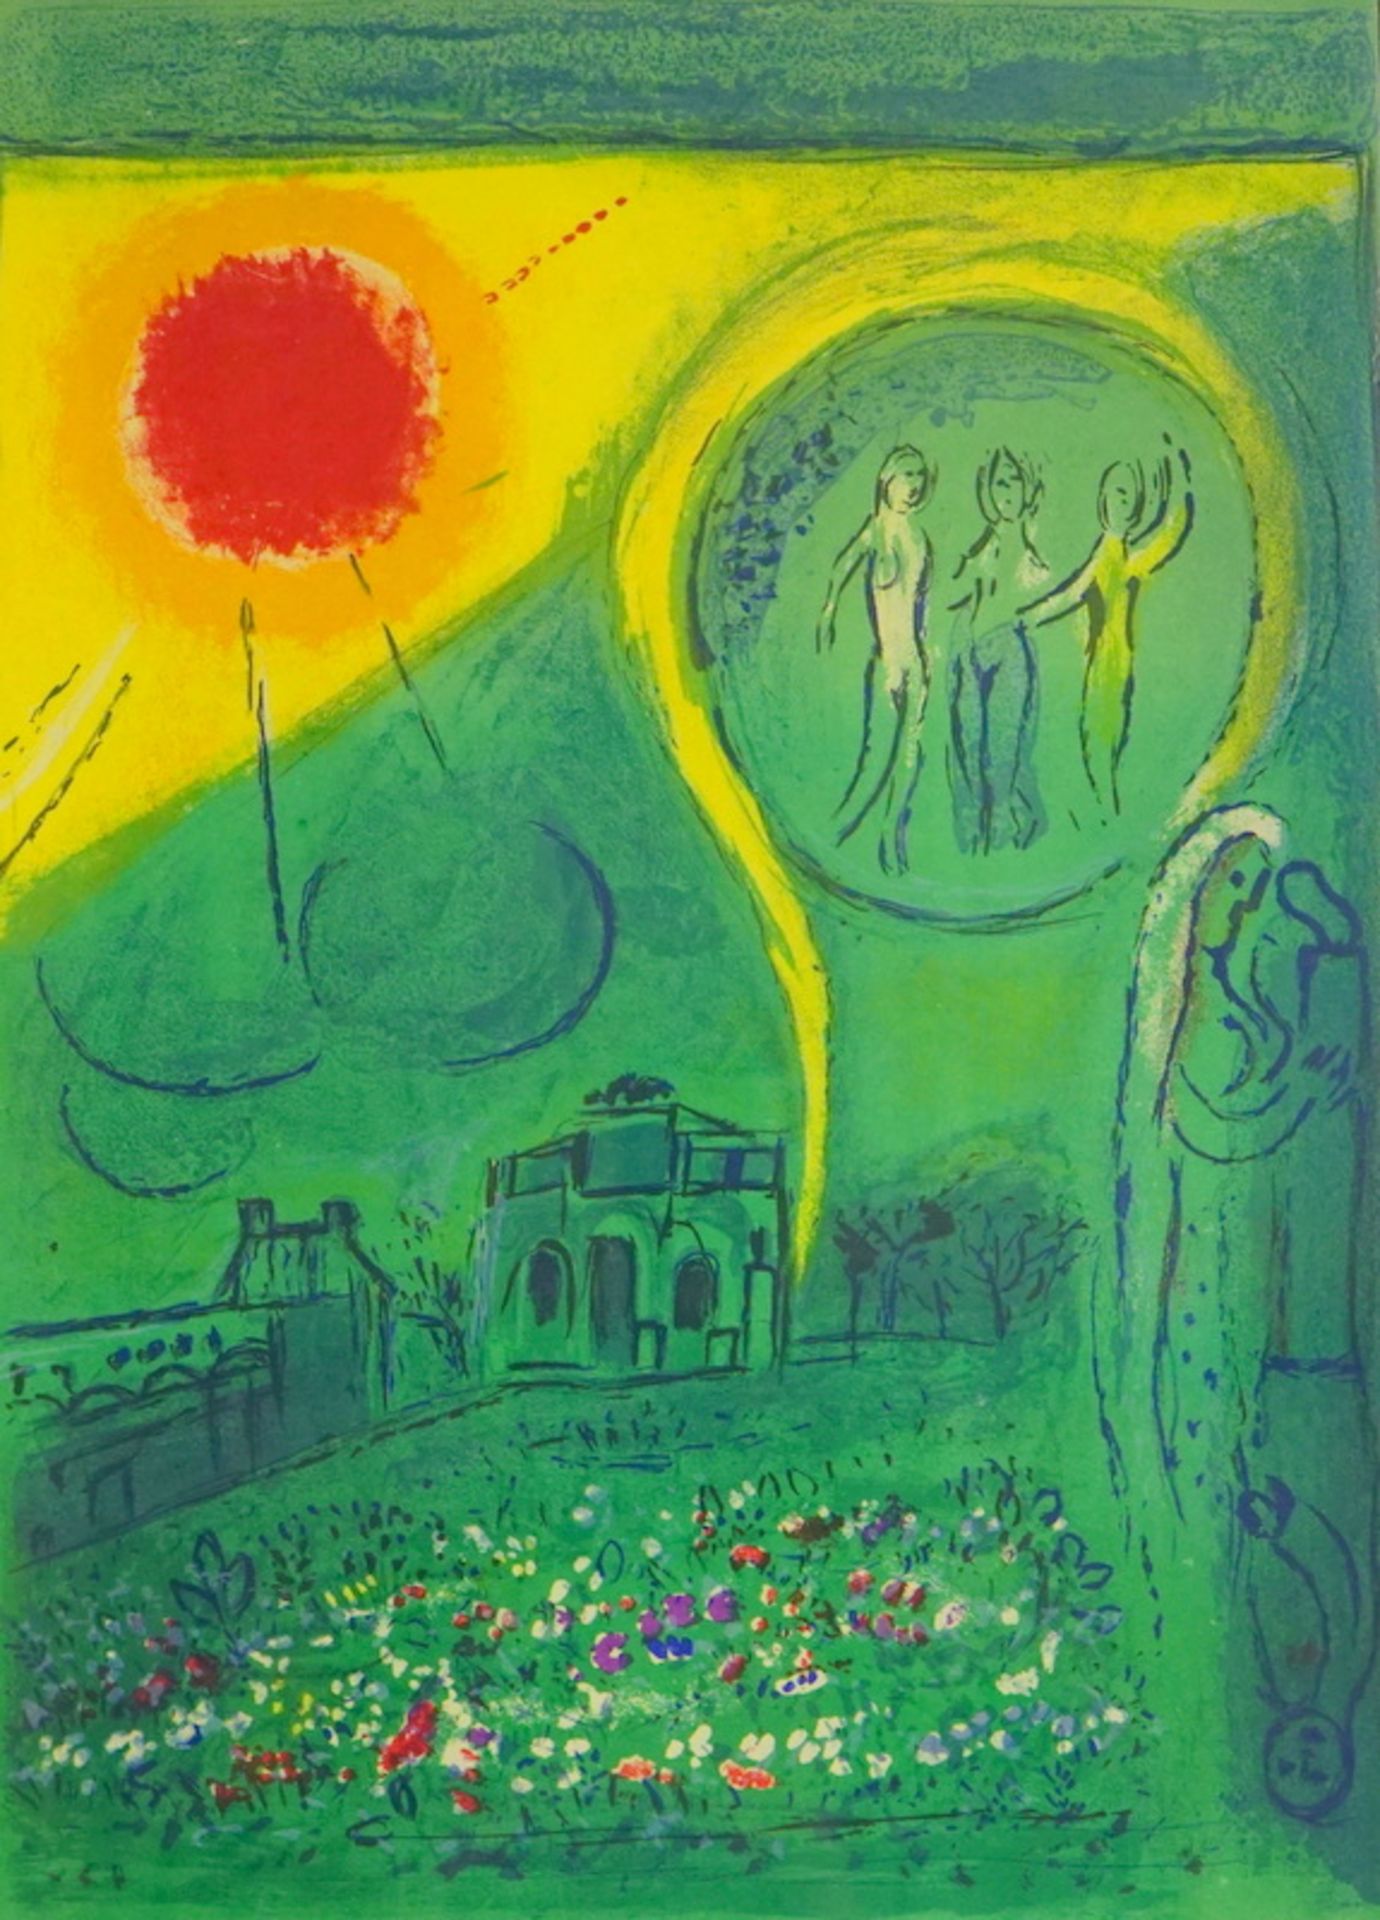 Chagall, Marc (1887Peskowatik-1985 Saint-Paul-de-Vence): "Le Carrousel du Louvre",Original-